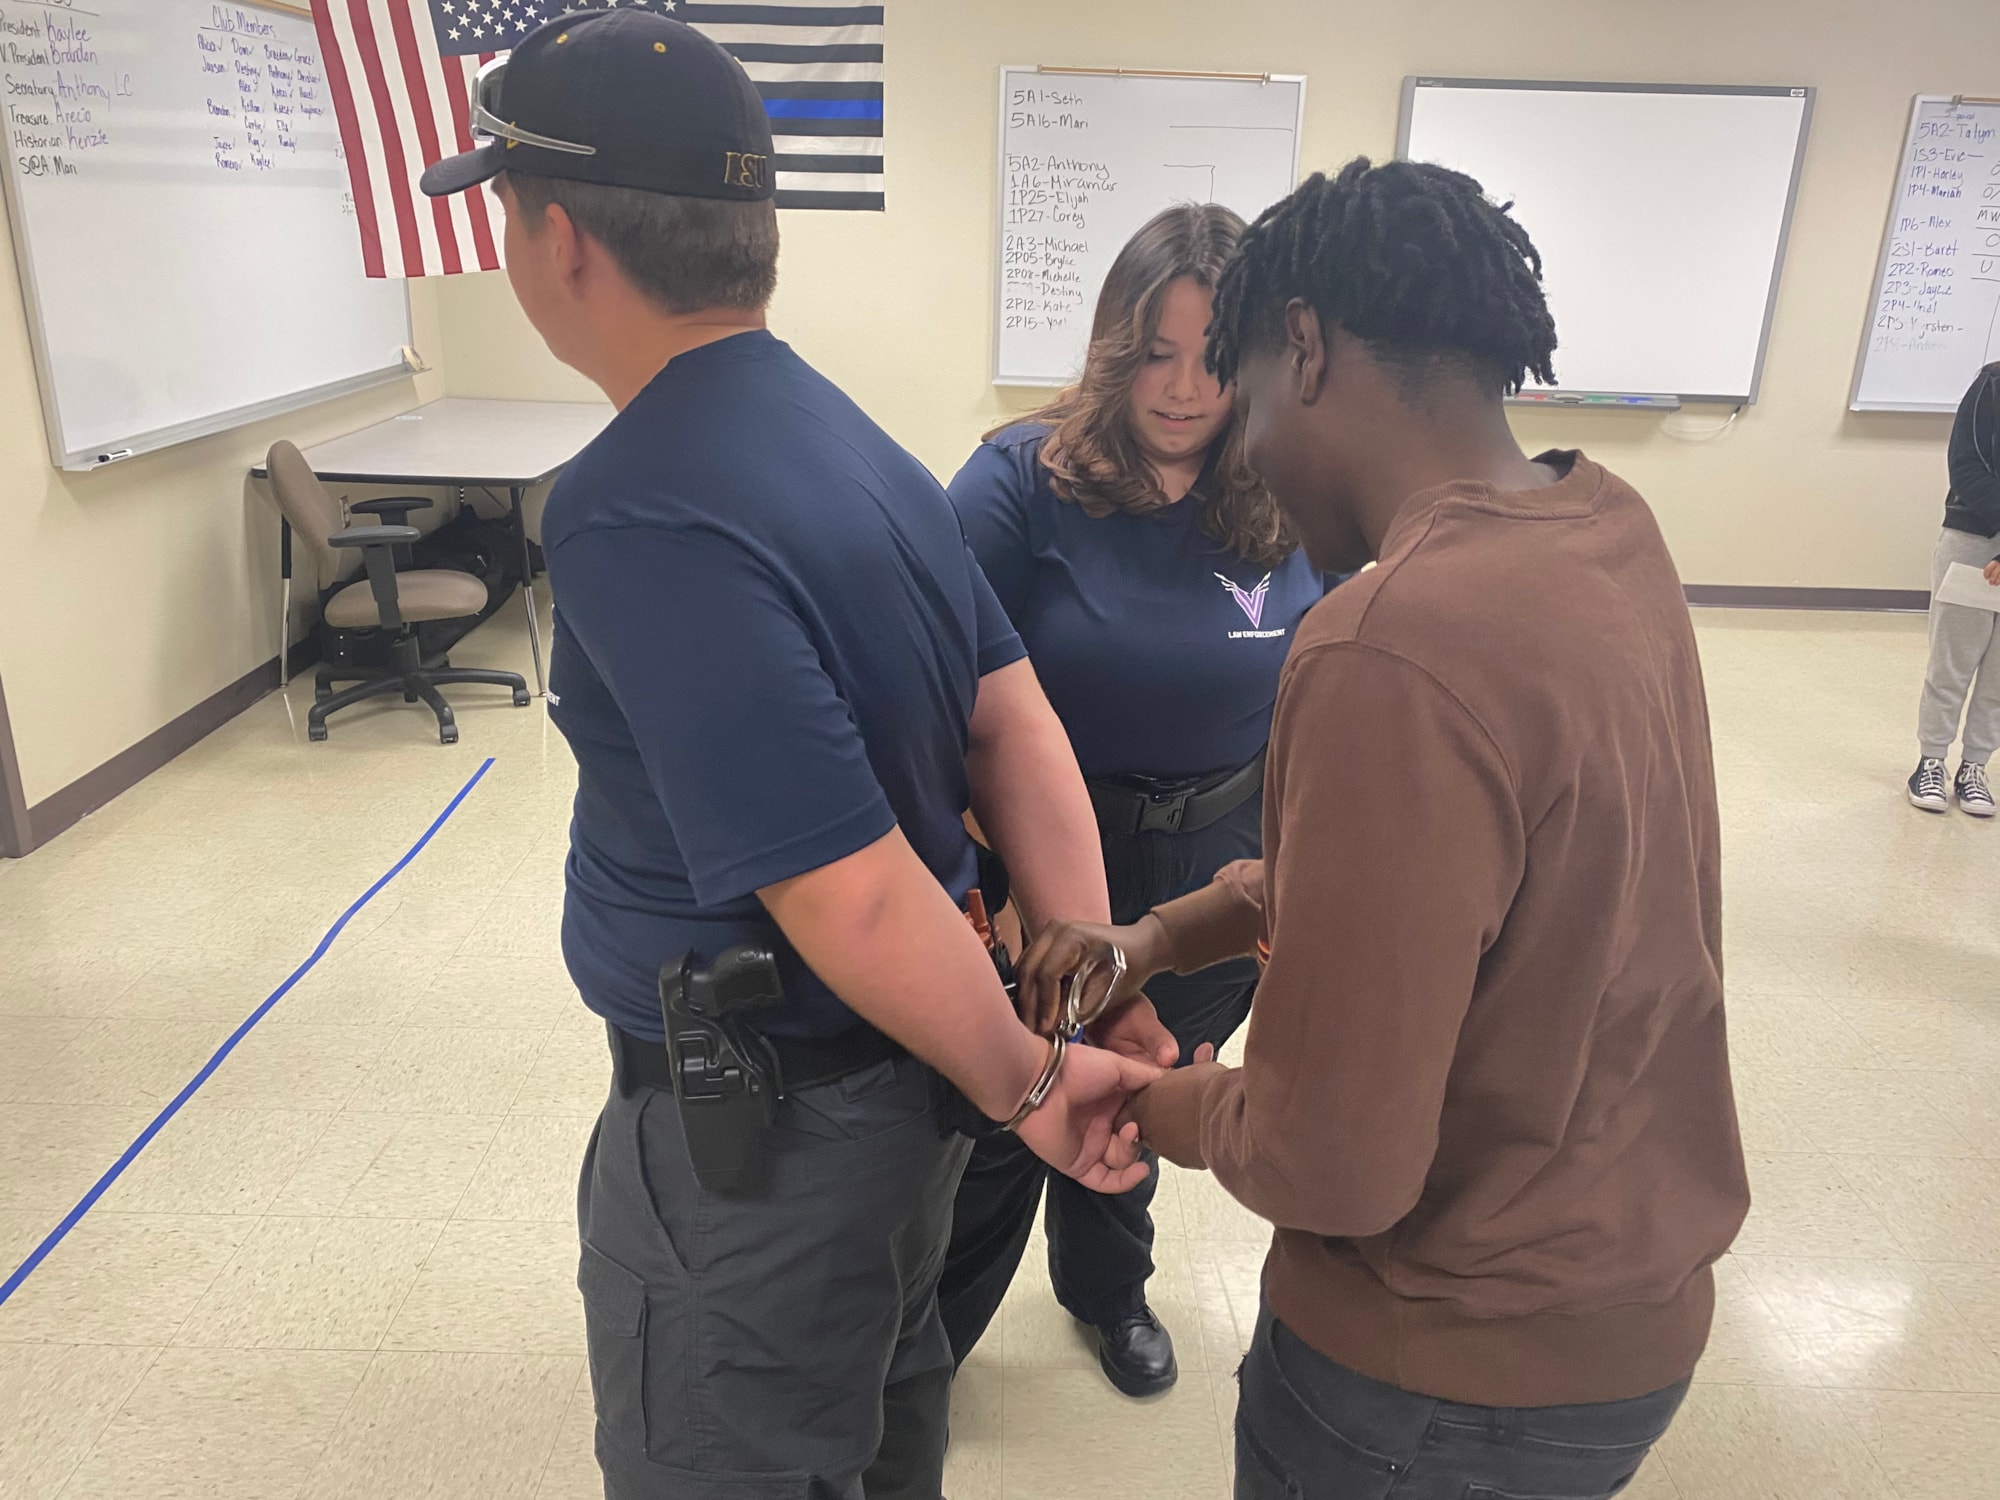 Student pretends to handcuff a suspect